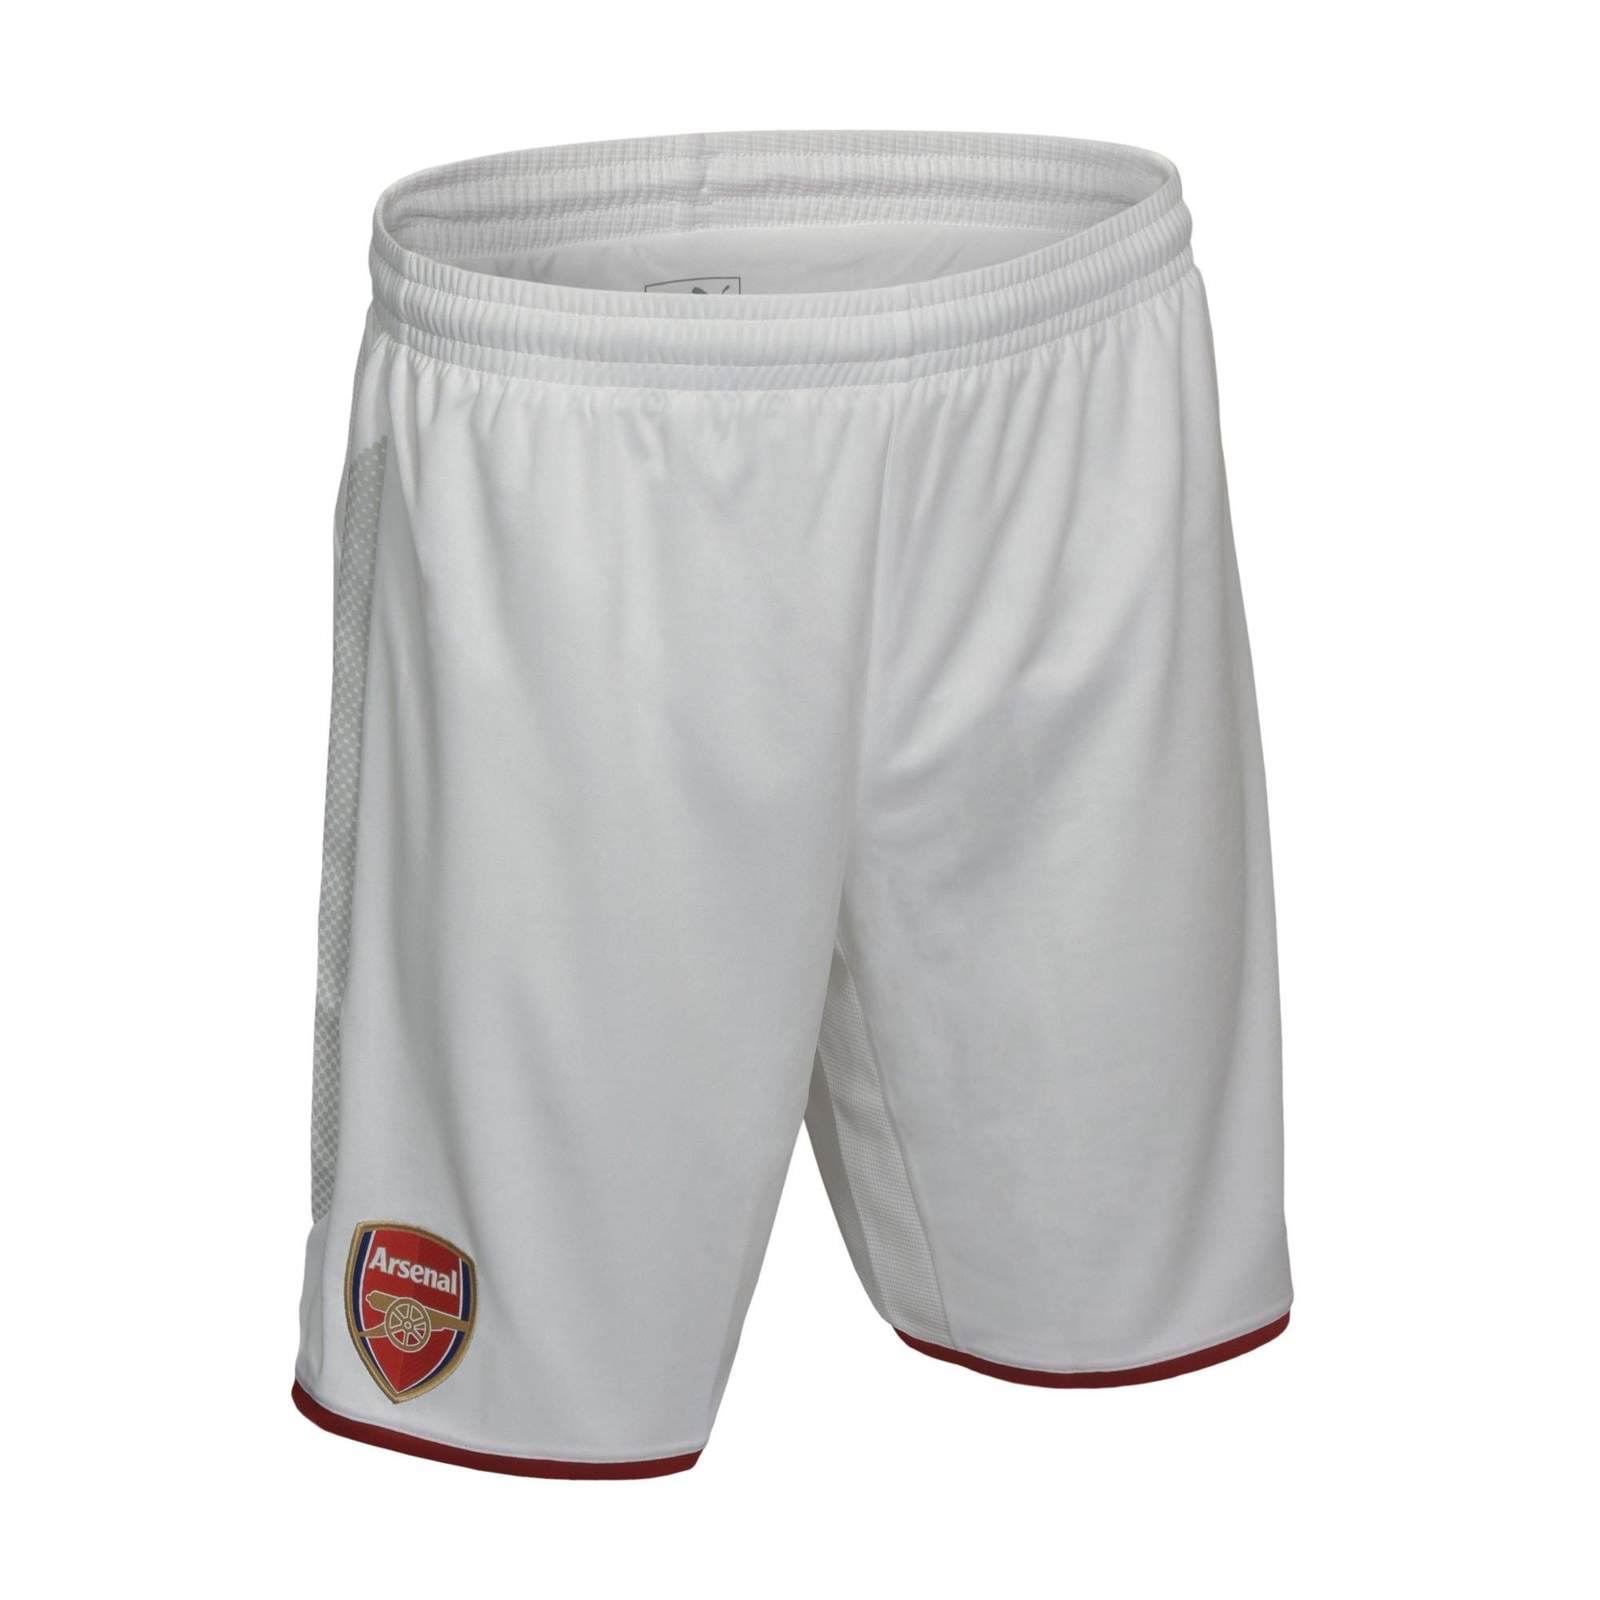 arsenal-17-18-home-shorts